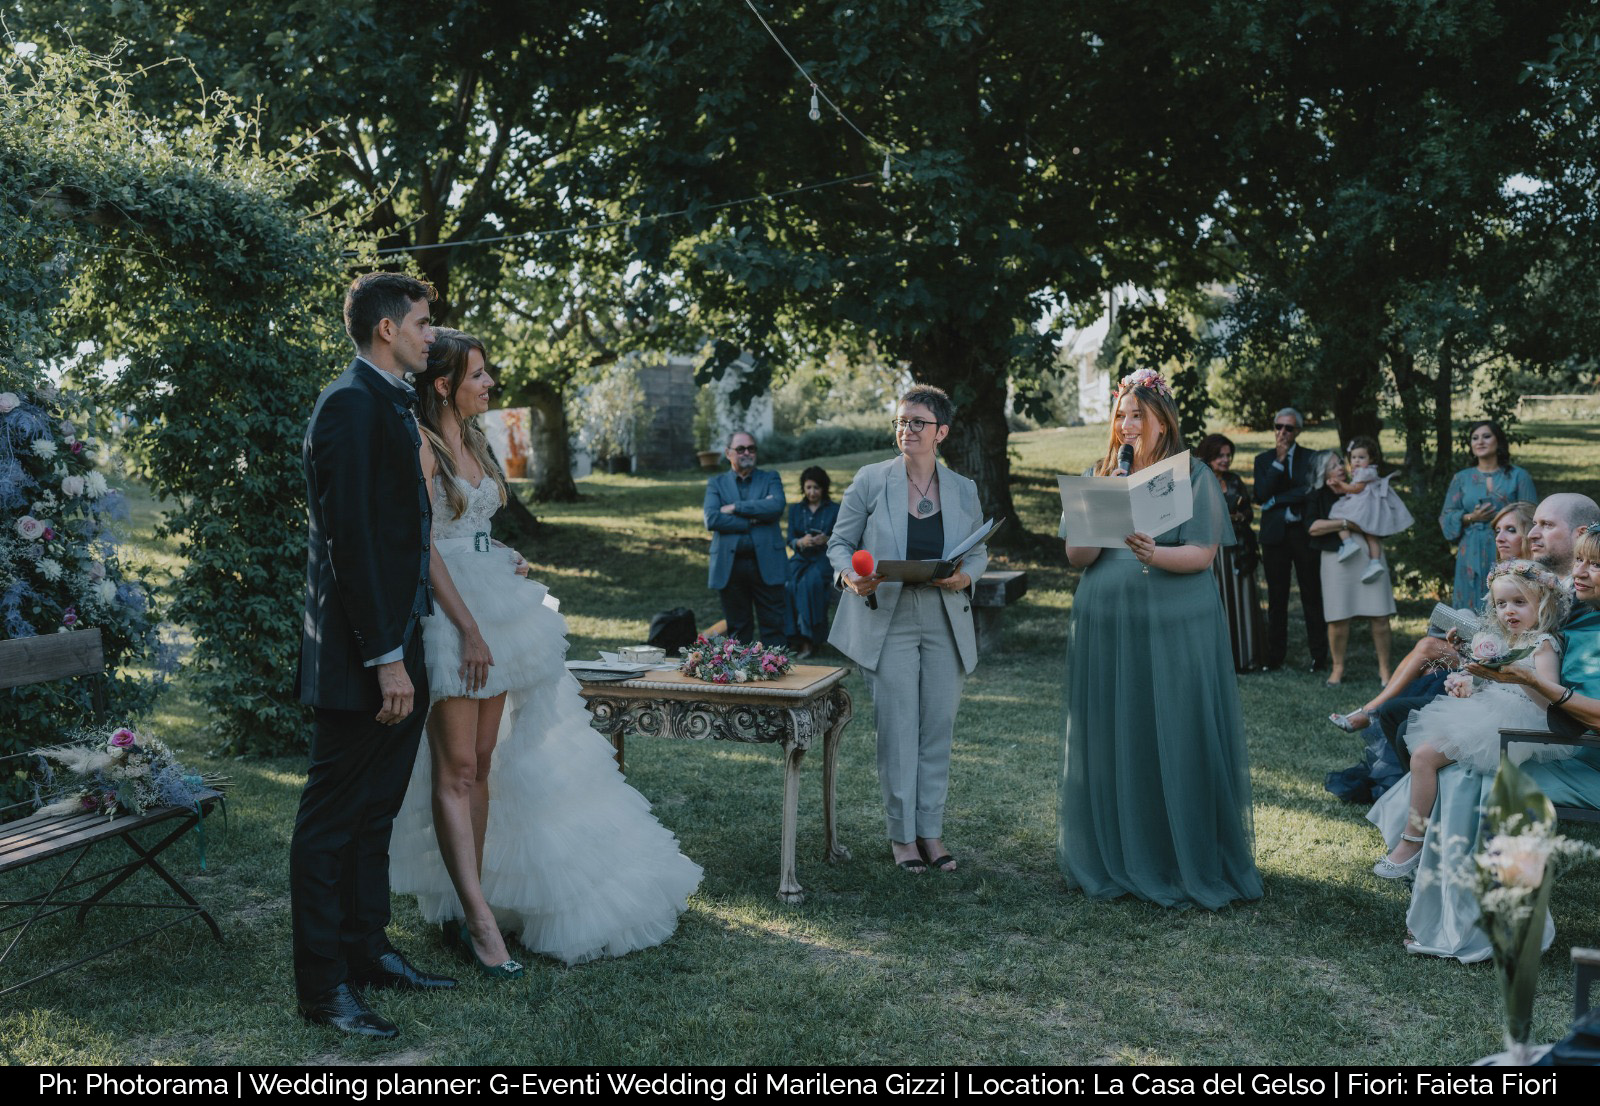 Ph: Photorama | Wedding planner: G-Eventi Wedding di Marilena Gizzi | Location: La Casa del Gelso | Fiori: Faieta Fiori